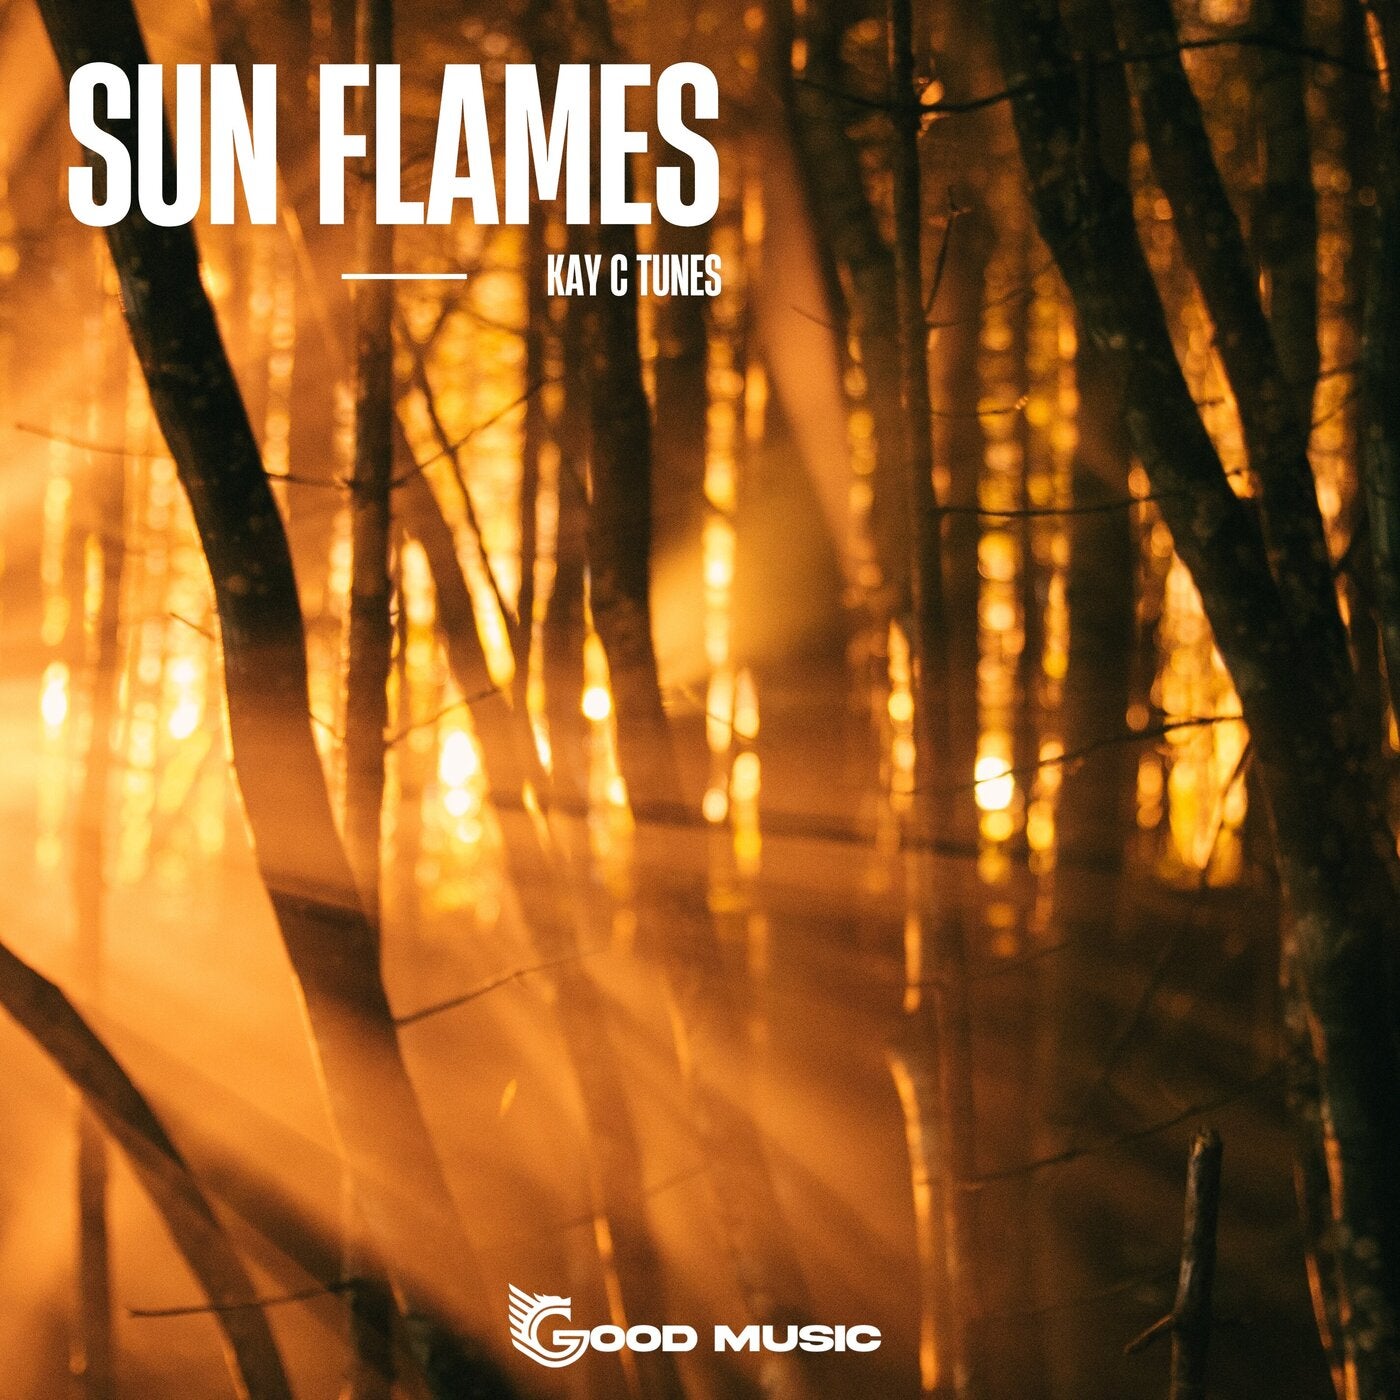 Sun Flames